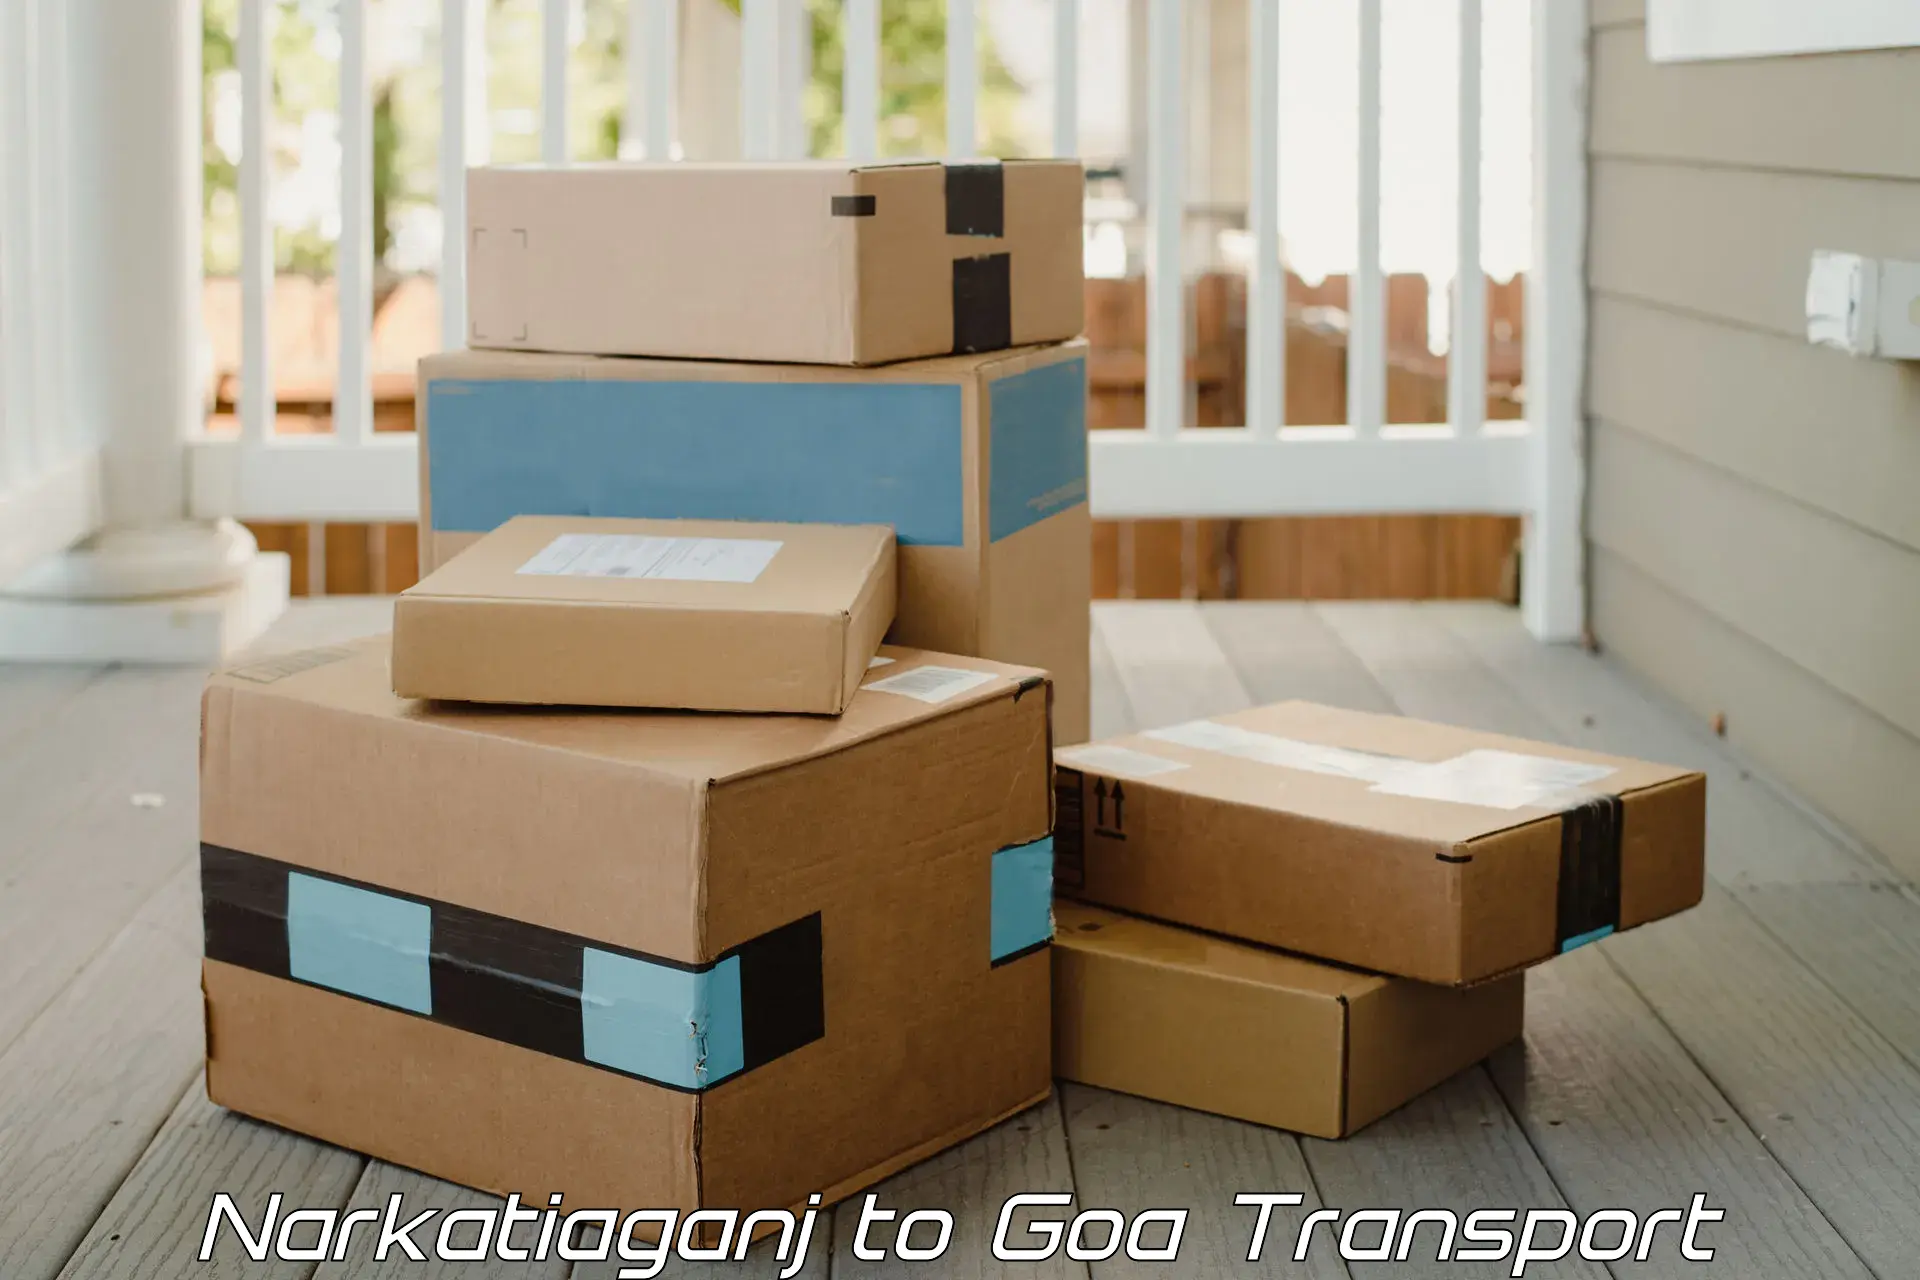 Shipping partner Narkatiaganj to South Goa